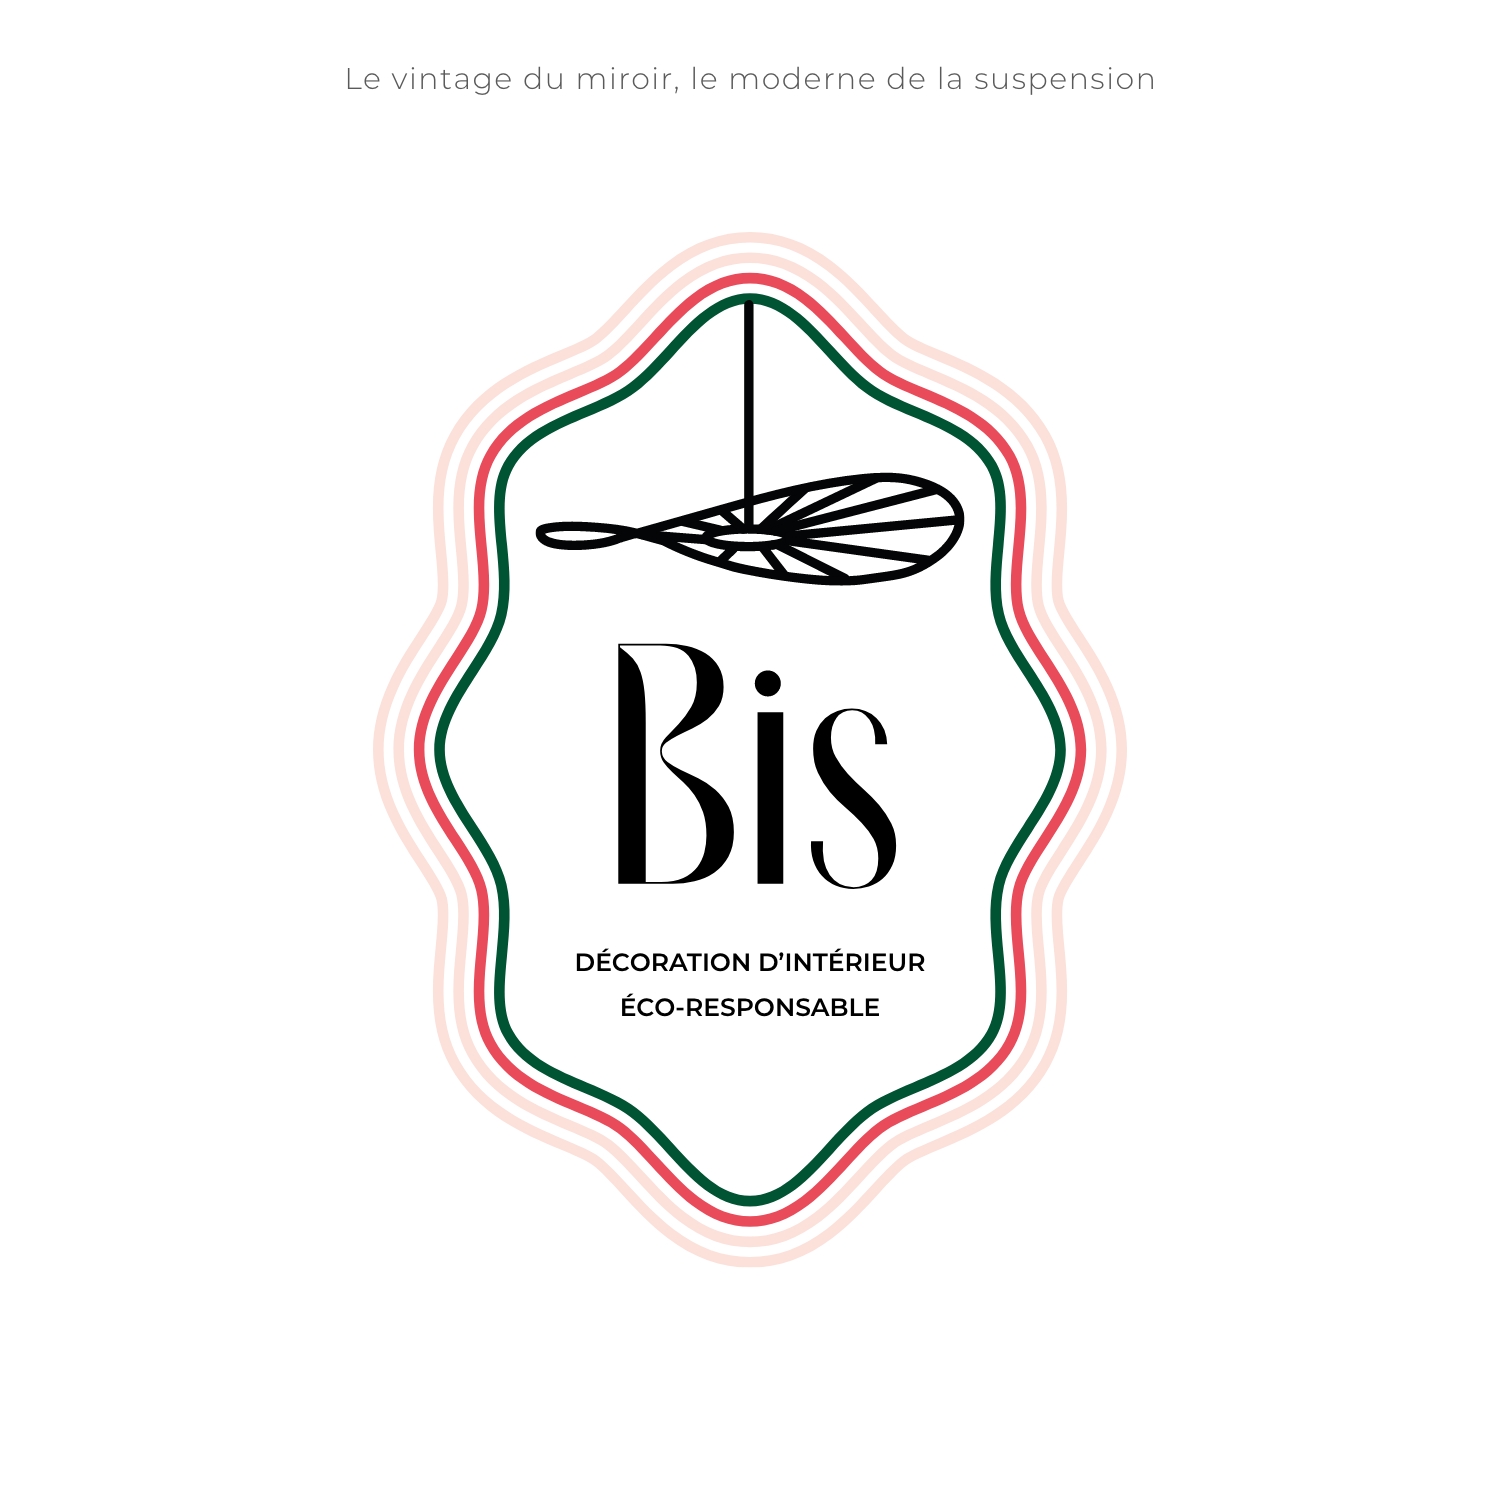 Proposition Logo Bis